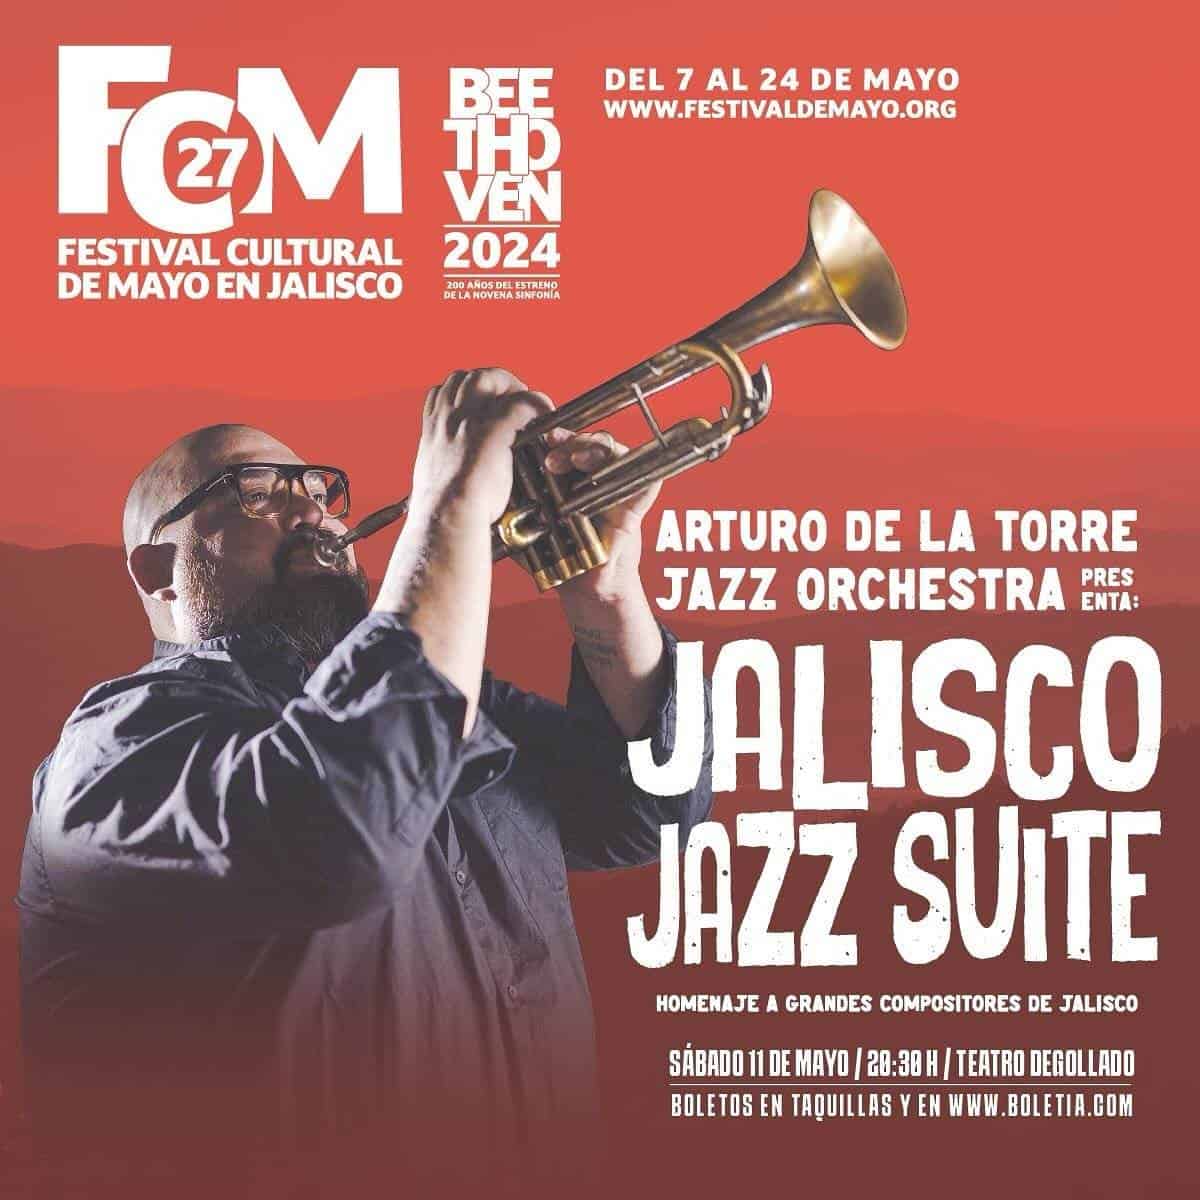 Arturo de la Torre Jazz Orchestra presentará Jalisco Jazz Suite en el Teatro Degollado como parte del Festival Cultural de Mayo